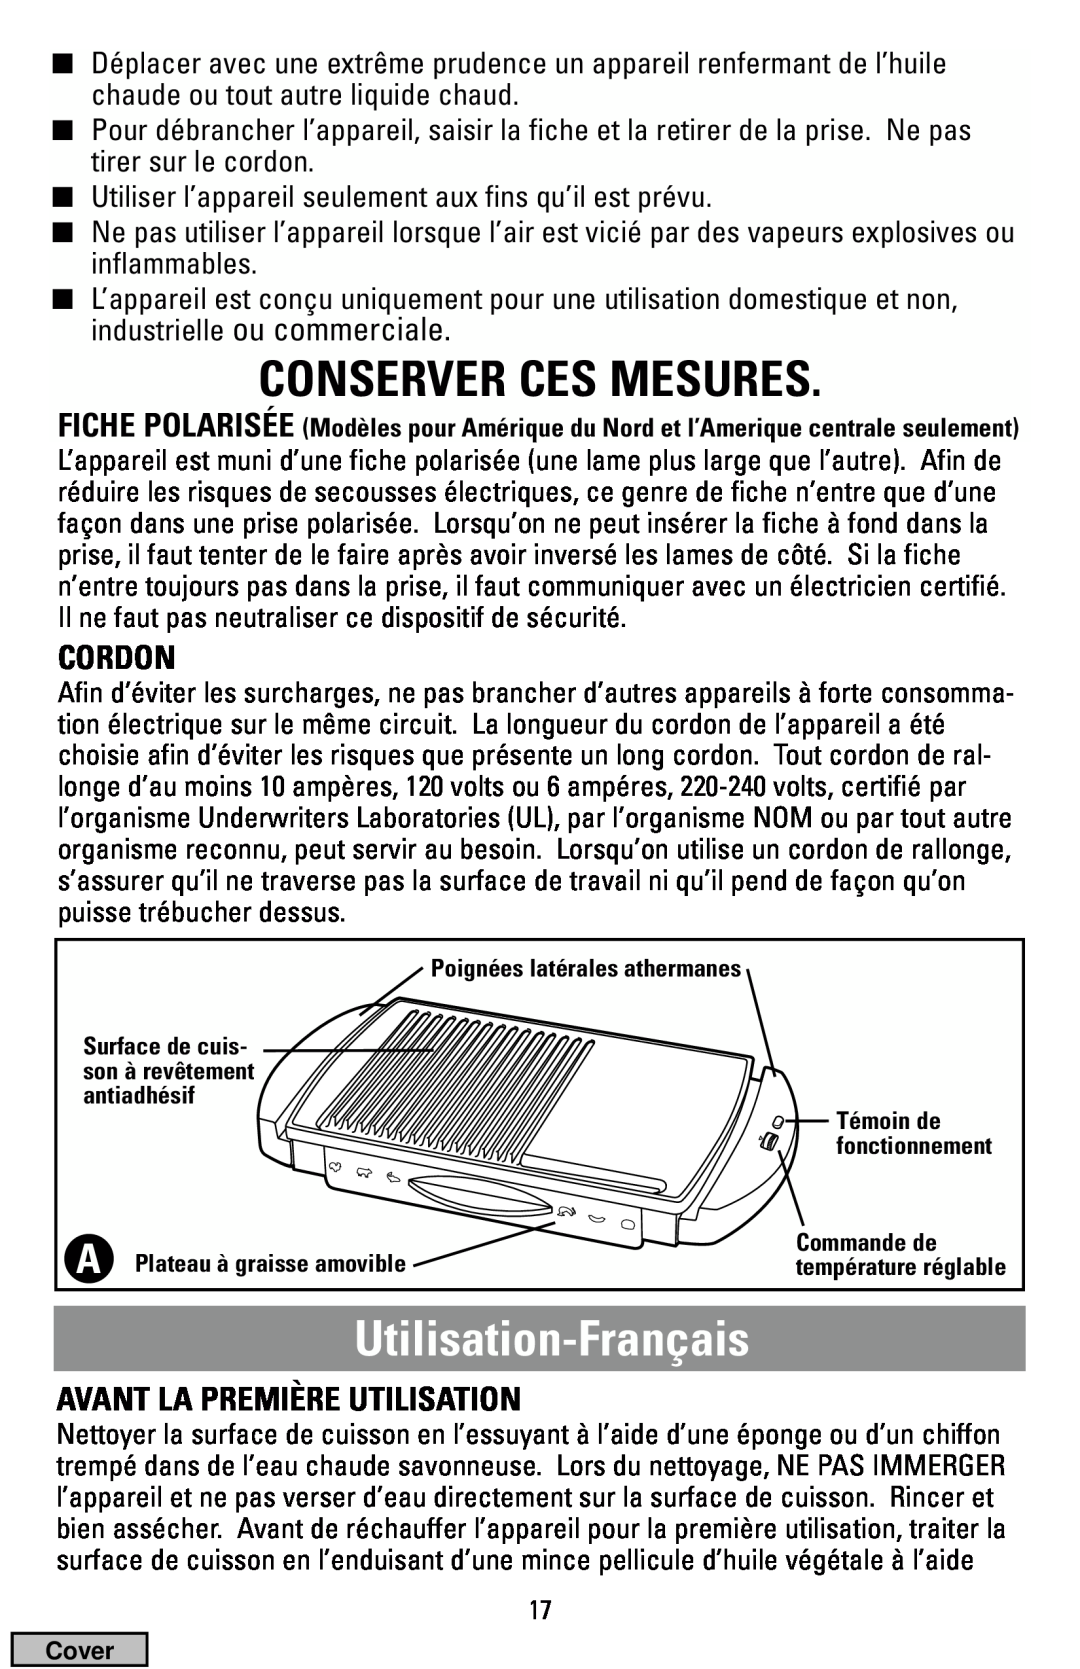 Black & Decker IG100 manual Conserver Ces Mesures, Utilisation-Français, Cordon, Avant La Première Utilisation 